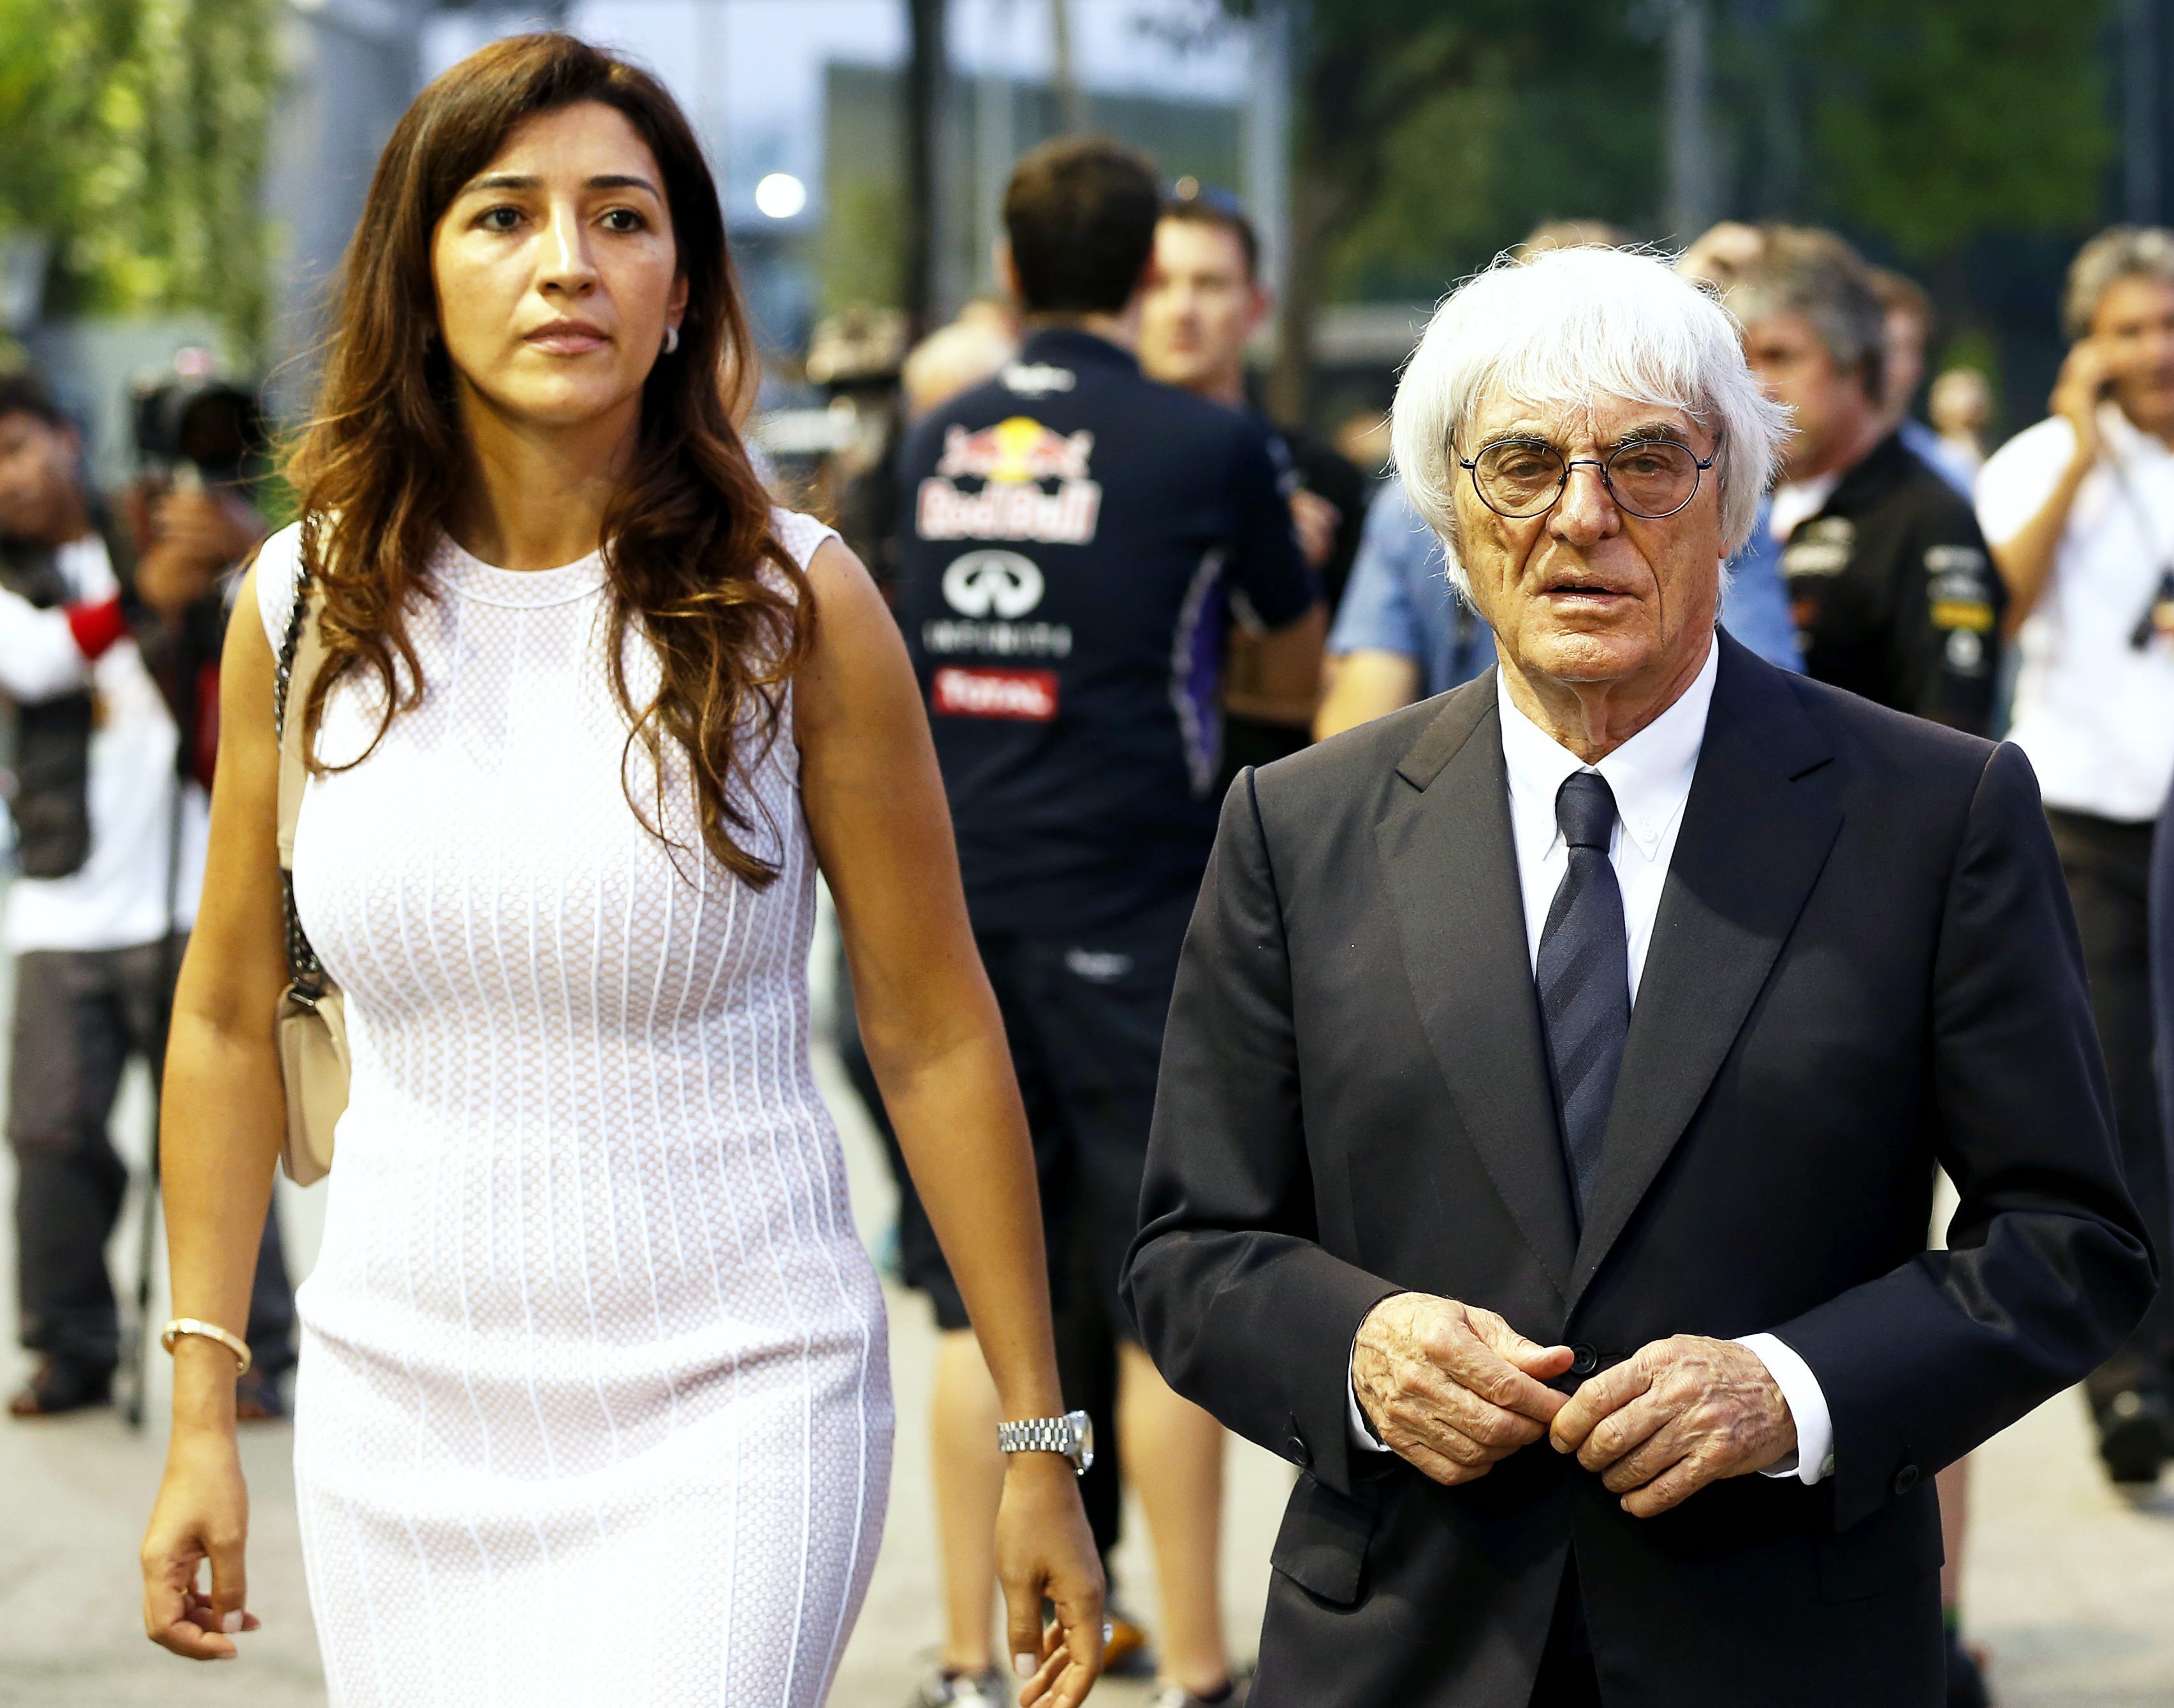 Fotografía de archivo fechada el 18 de septiembre de 2014 que muestra al máximo responsable de la Fórmula Uno, Bernie Ecclestone (d), y a su mujer Fabiana Flosi (izq), mientras caminan por el "paddock" del circuito de la Marina Bay Street, en Singapur. 